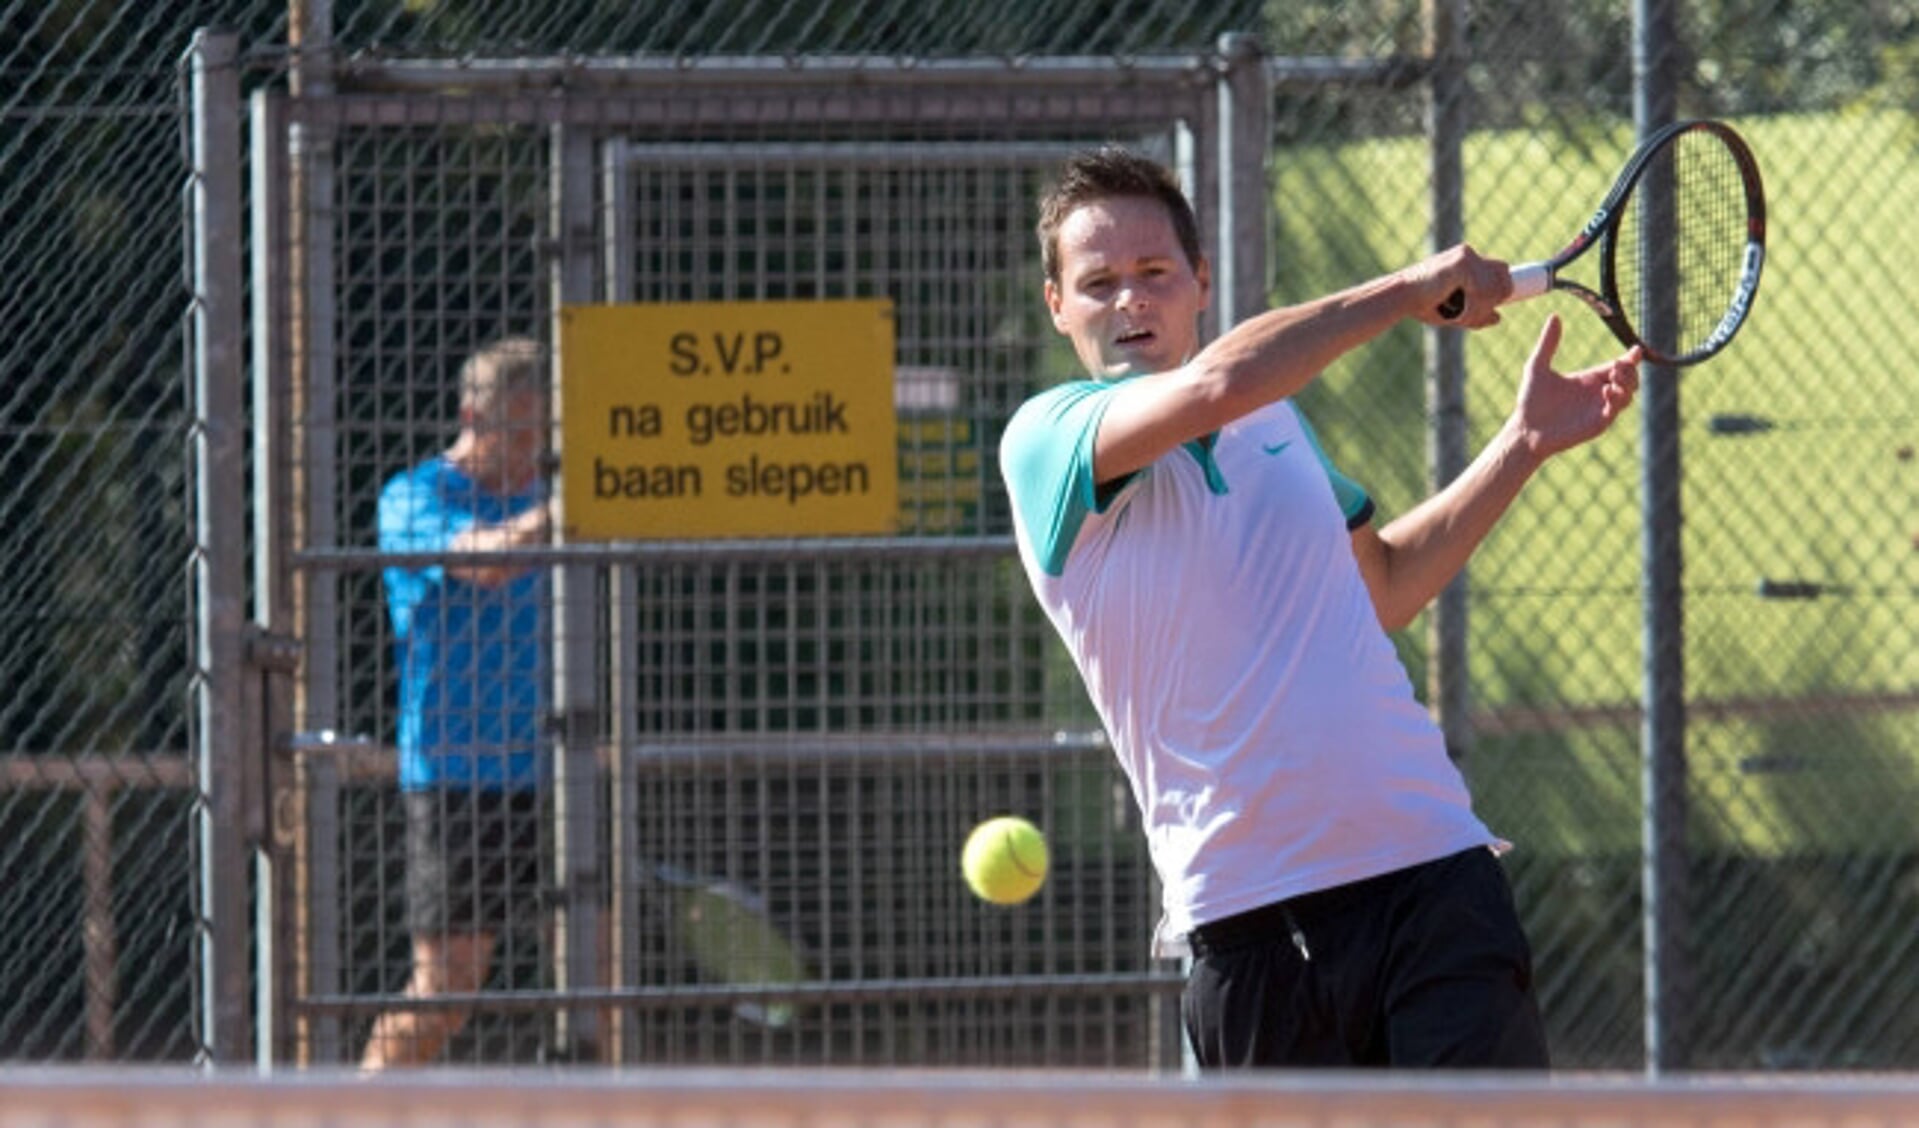  Zwolse Tennis Kampioenschappen bij ZLTB (Bas de Vries)